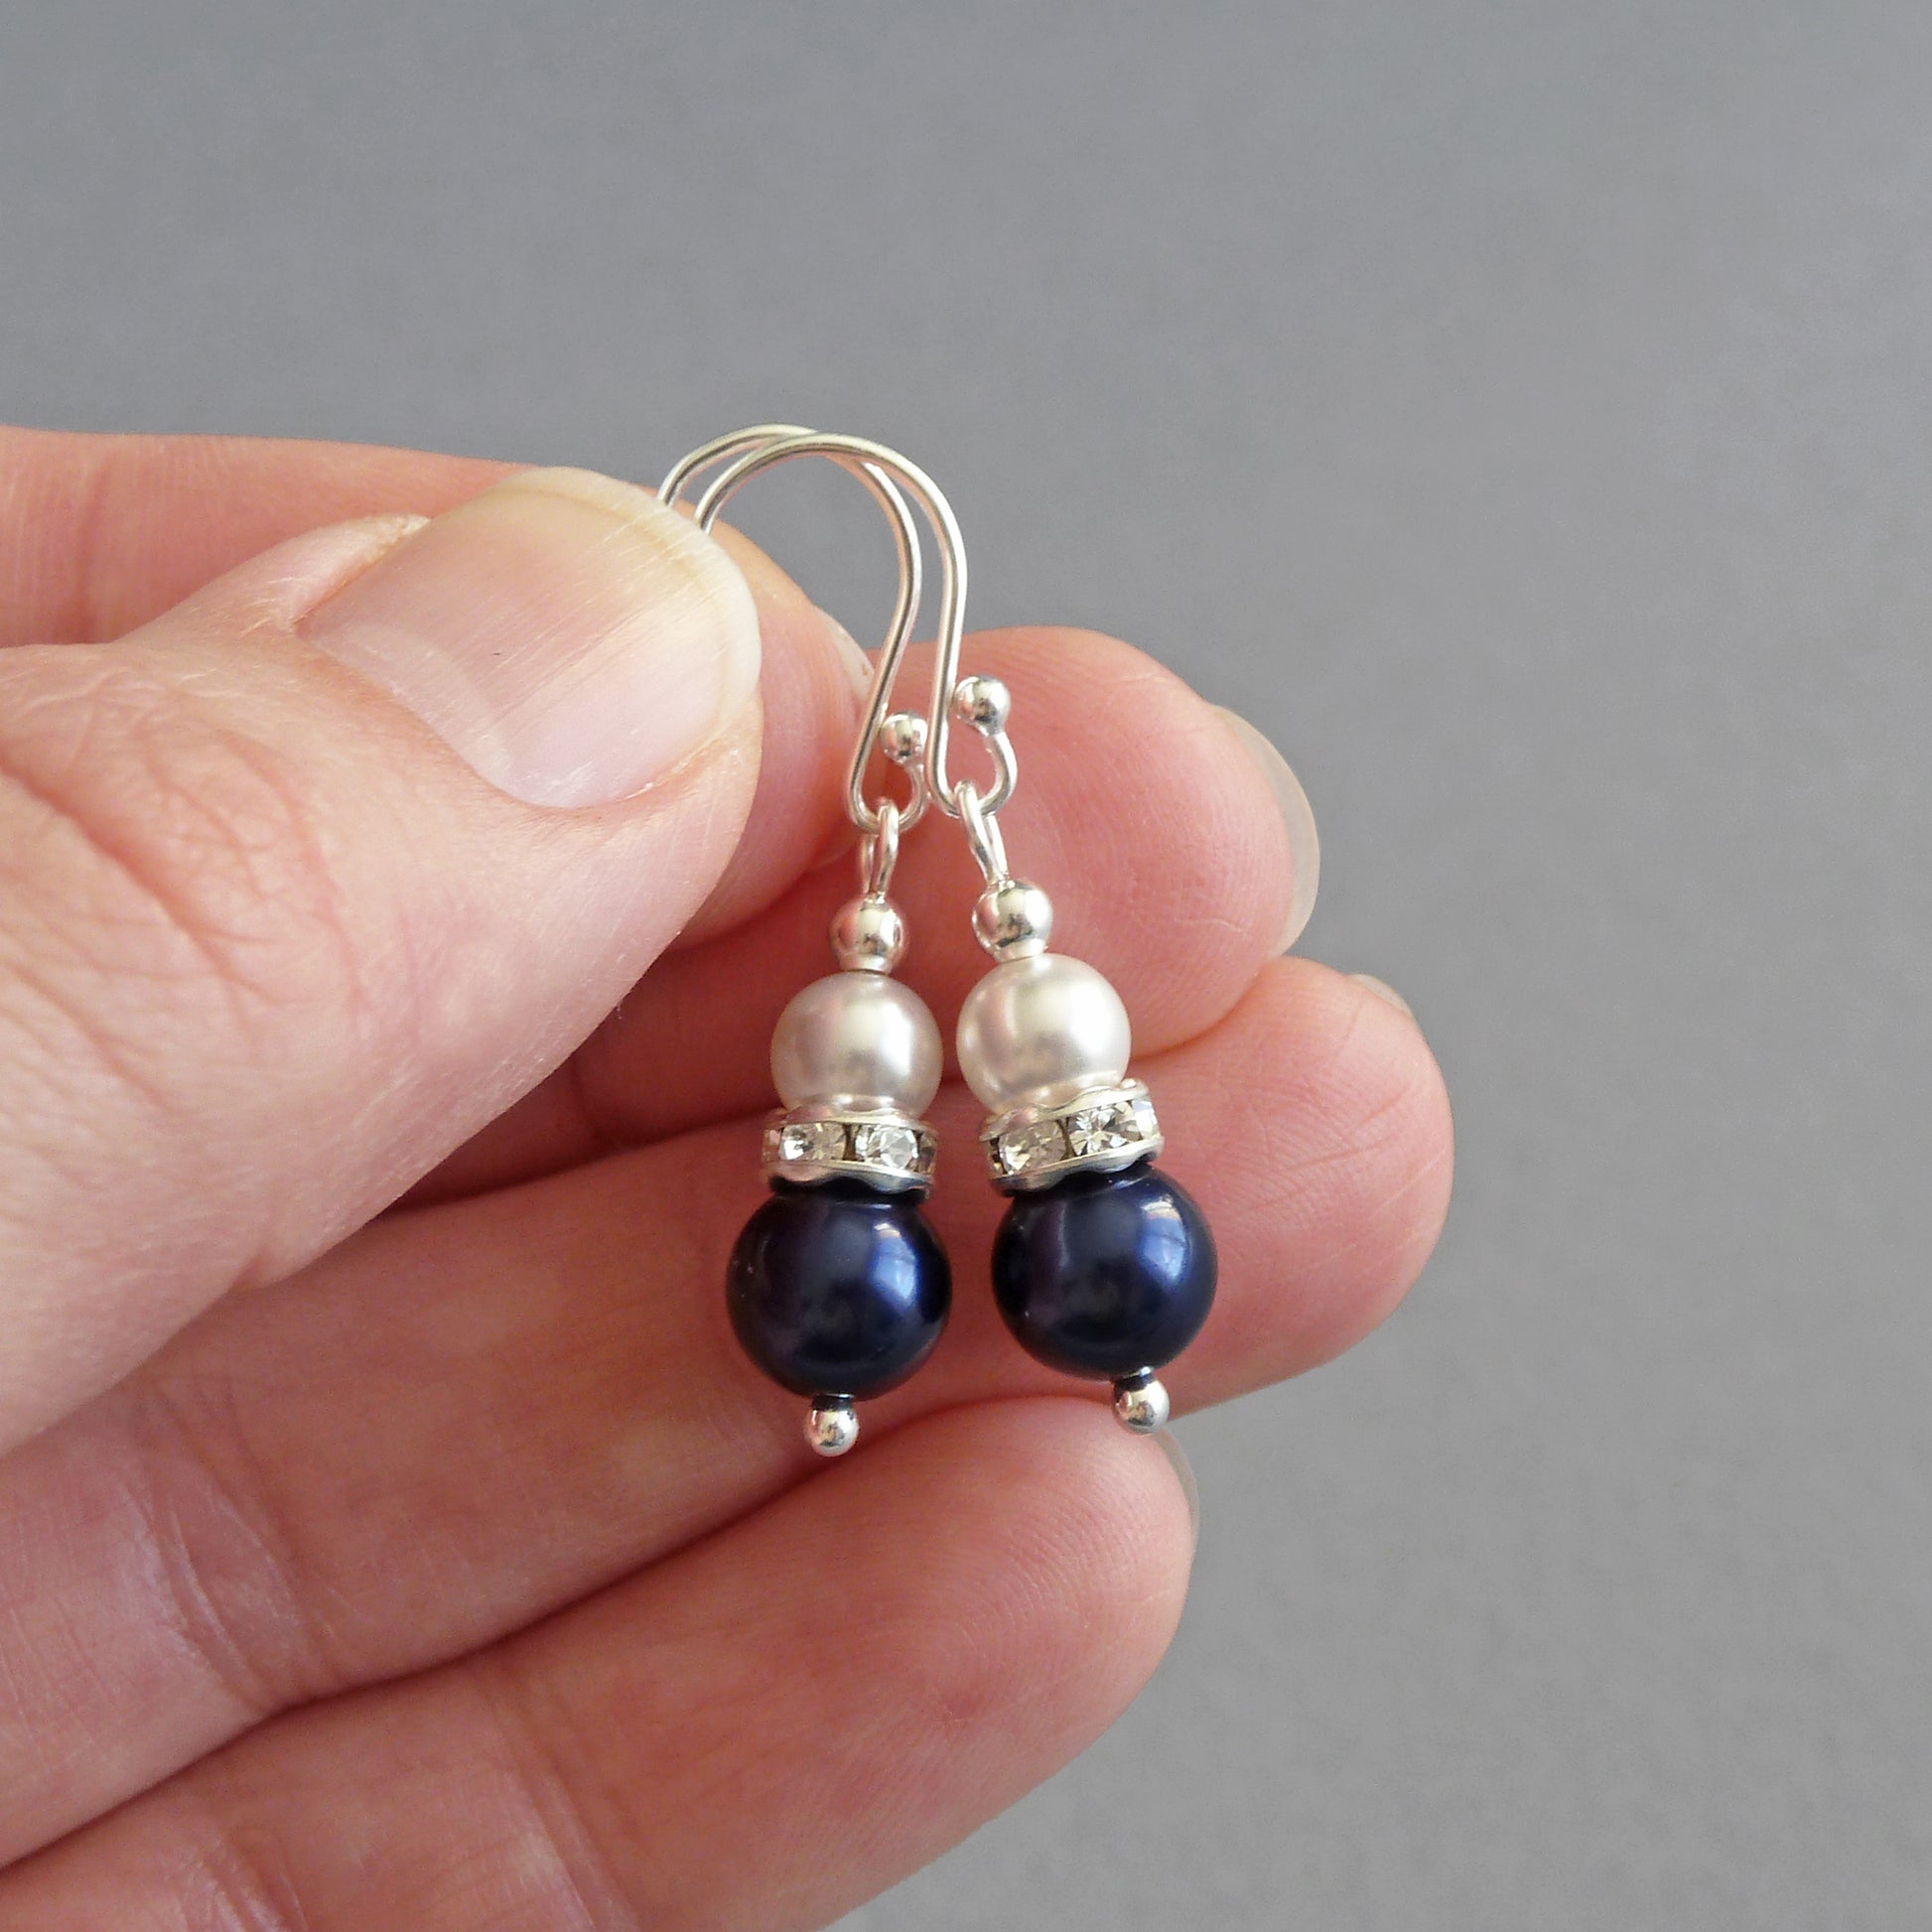 Navy pearl drop earrings